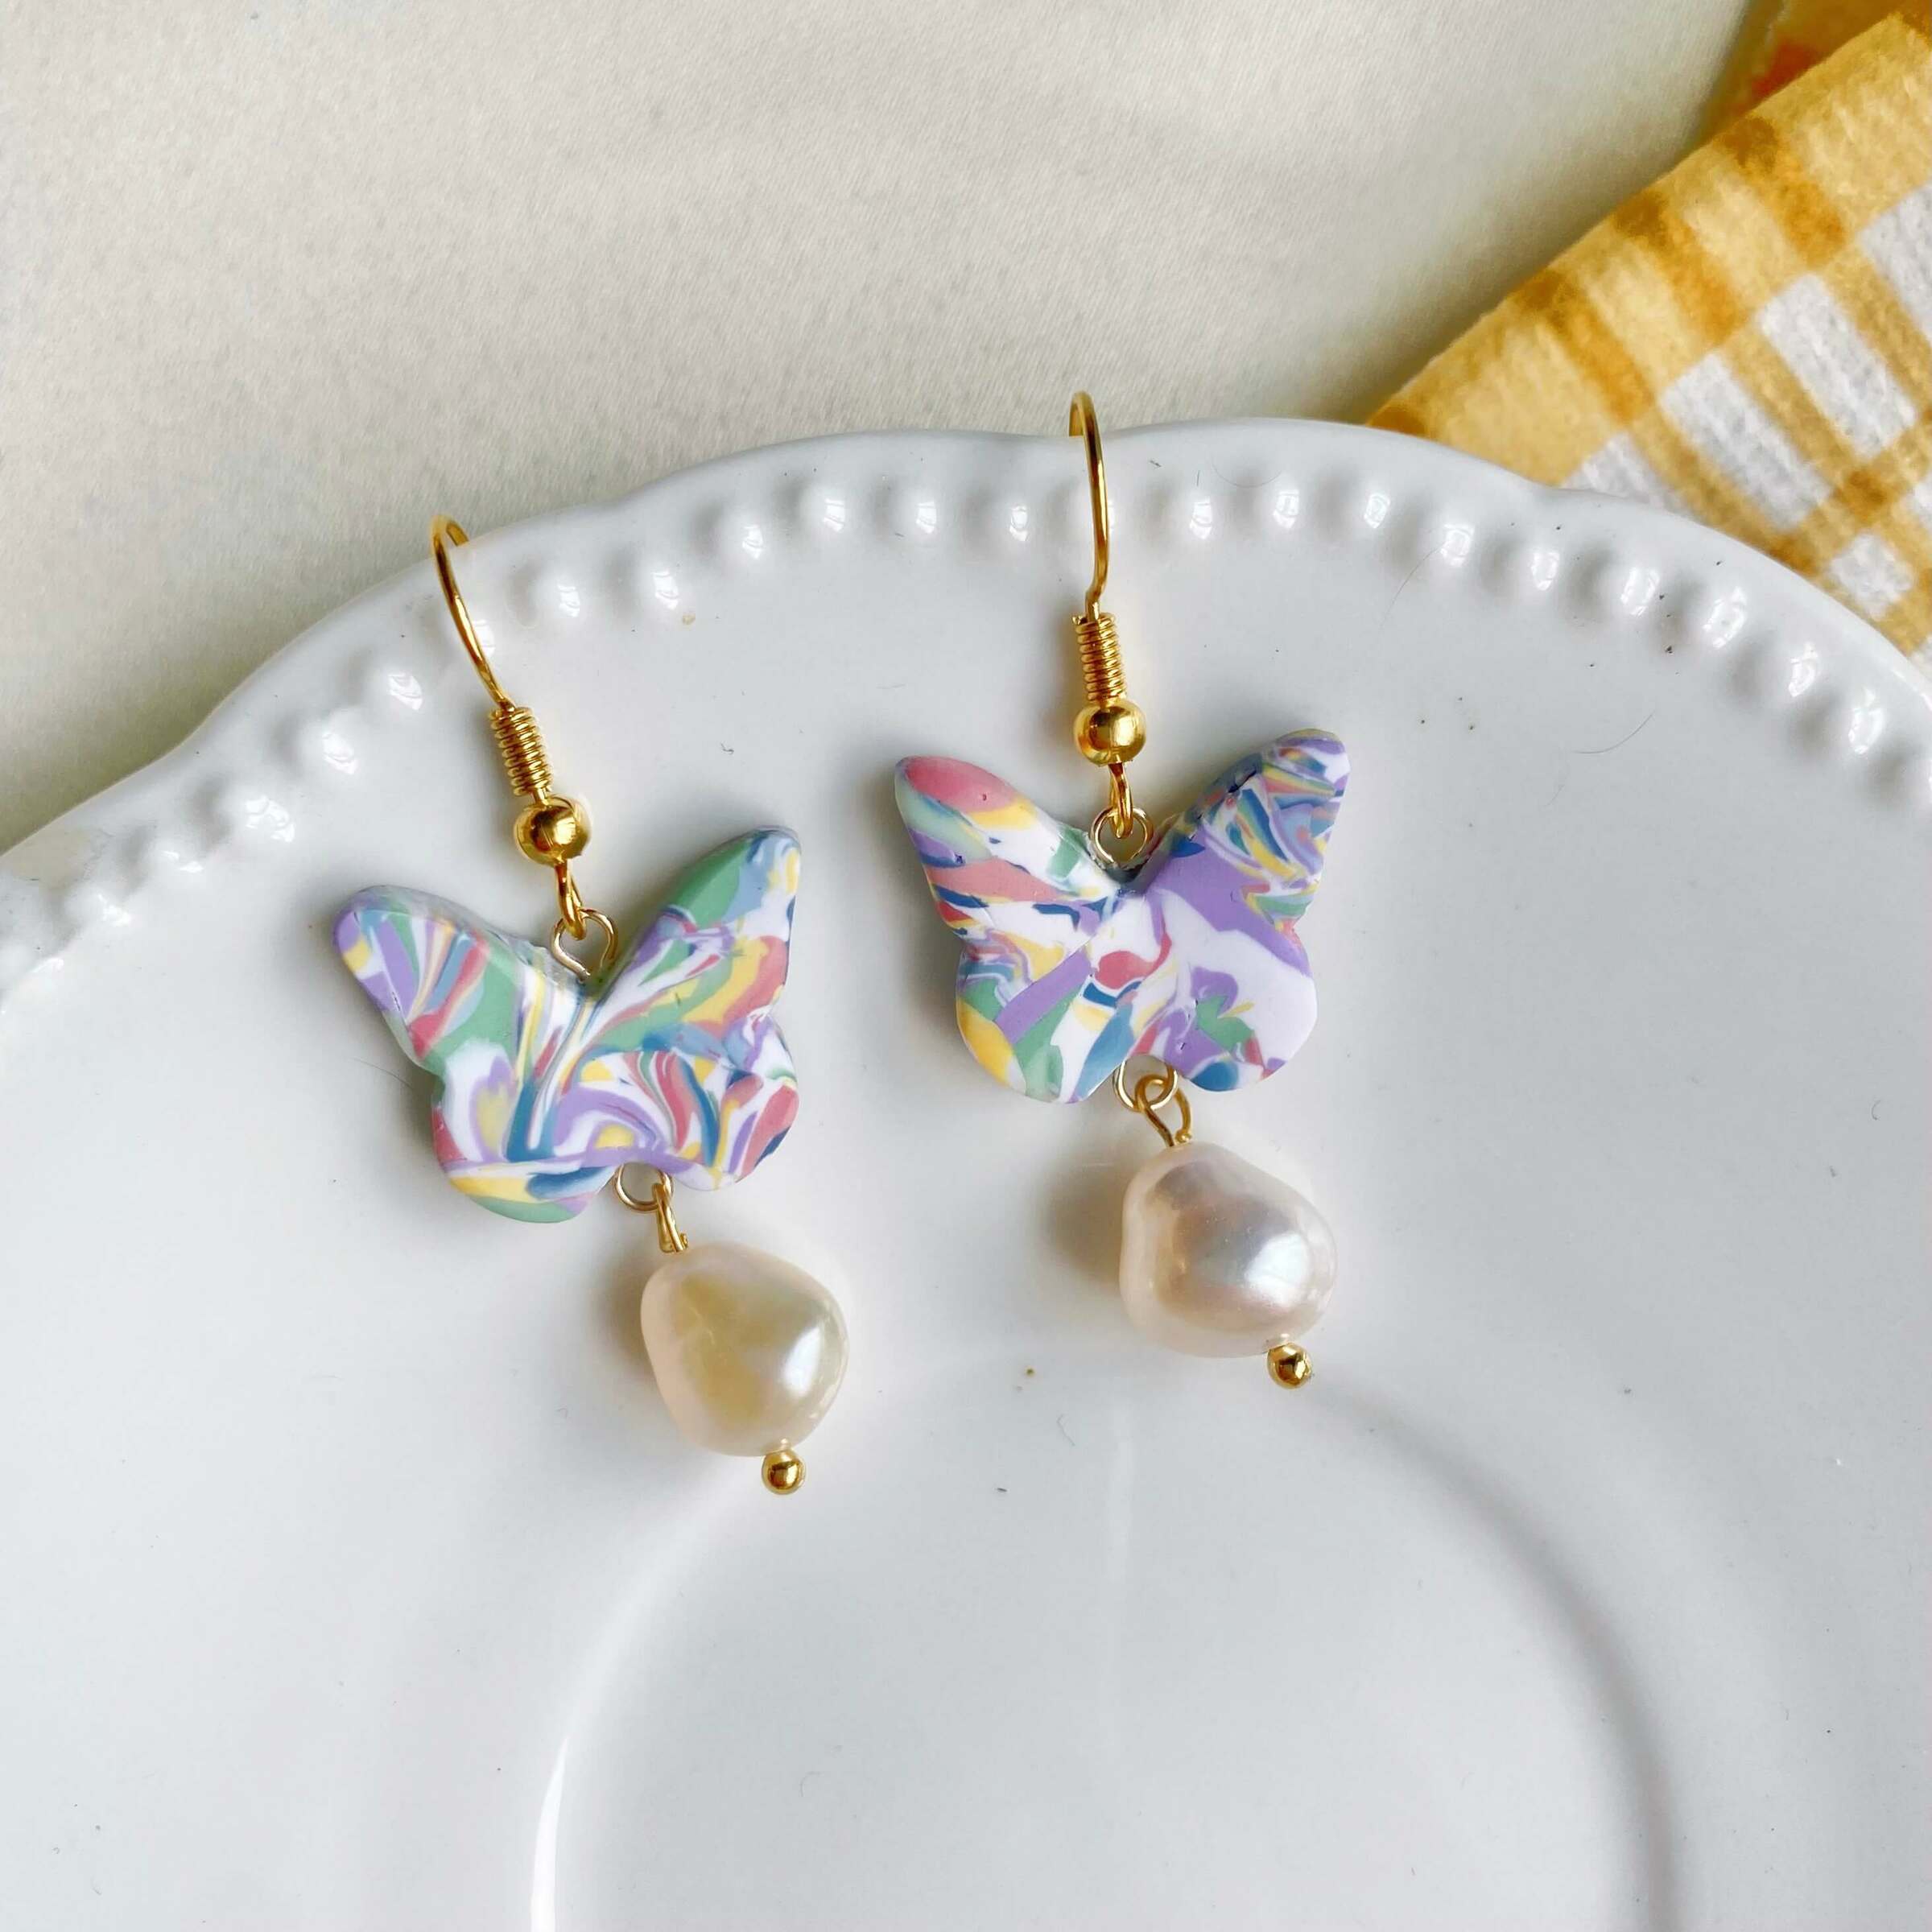 068-10 Zephyr Butterflyt Hook Clay Earrings with Feshwater Pearls.jpg